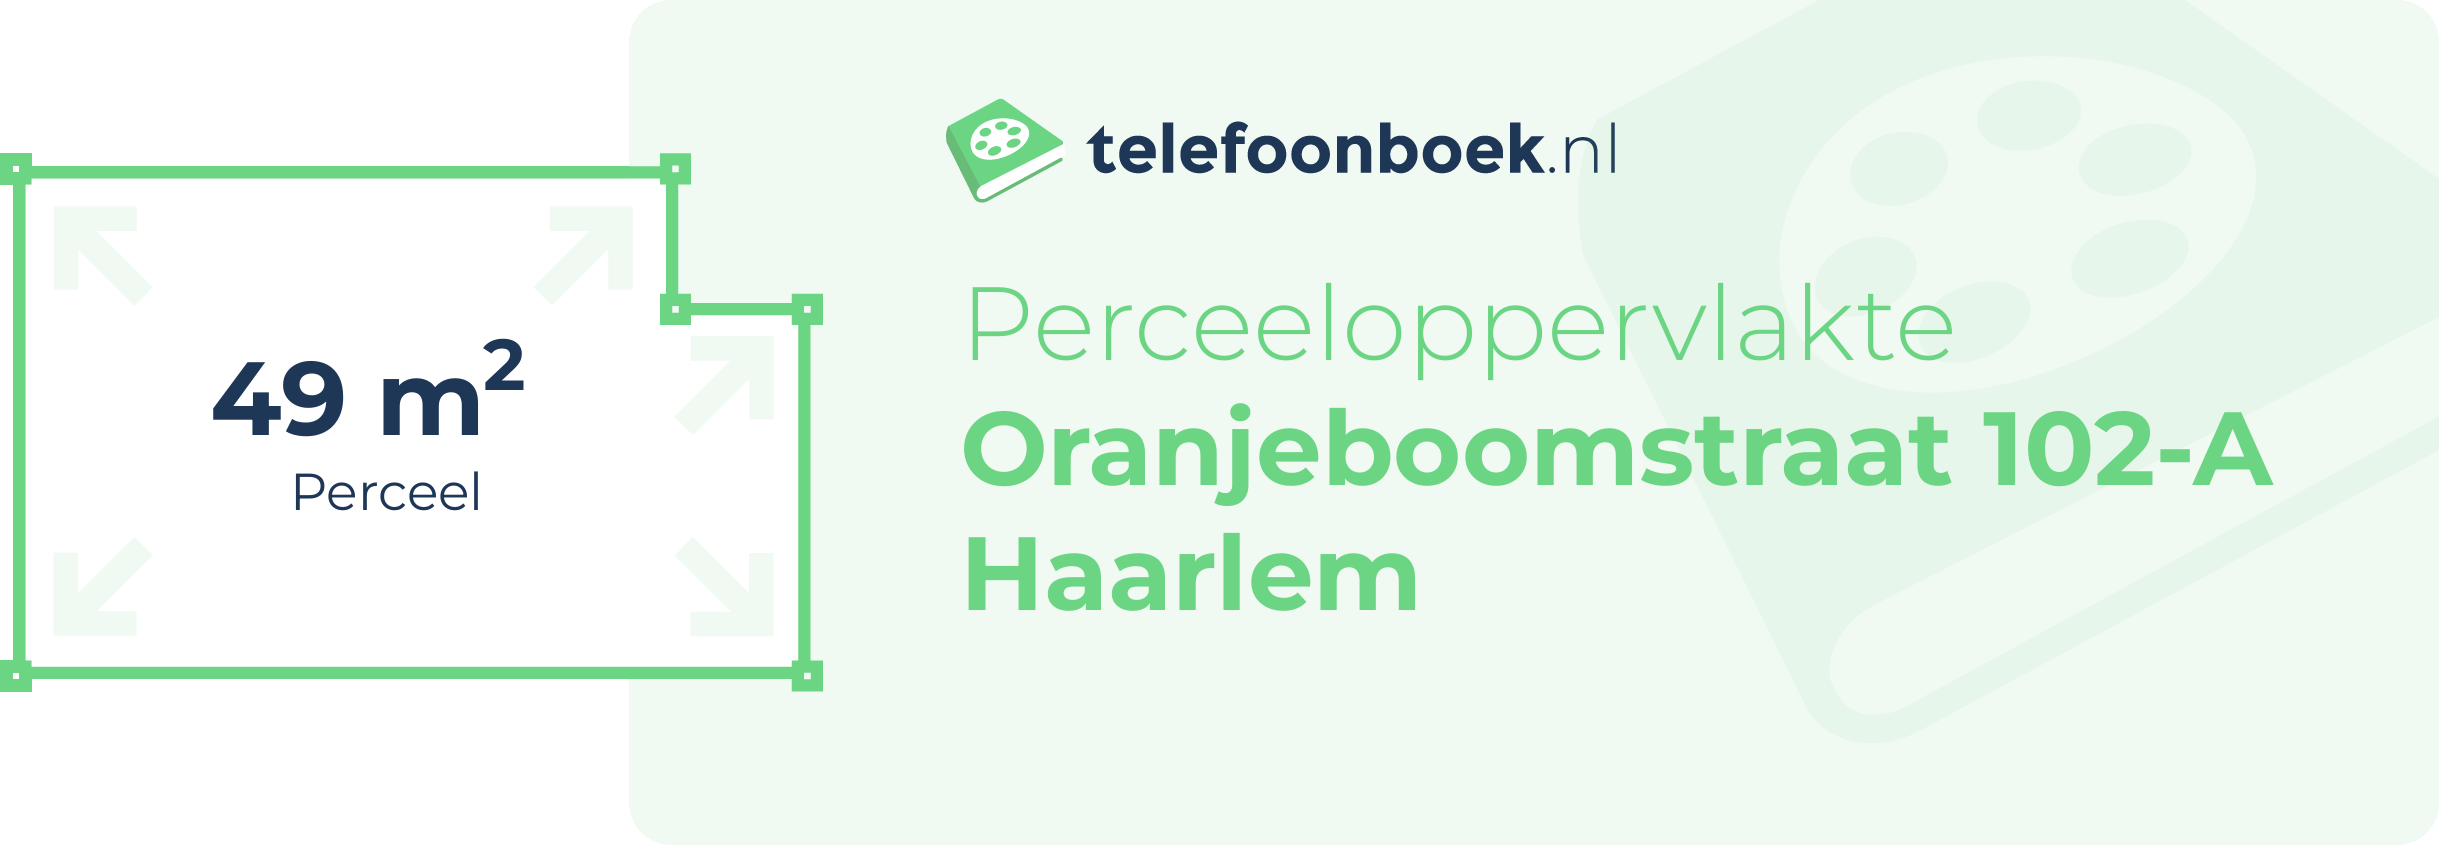 Perceeloppervlakte Oranjeboomstraat 102-A Haarlem